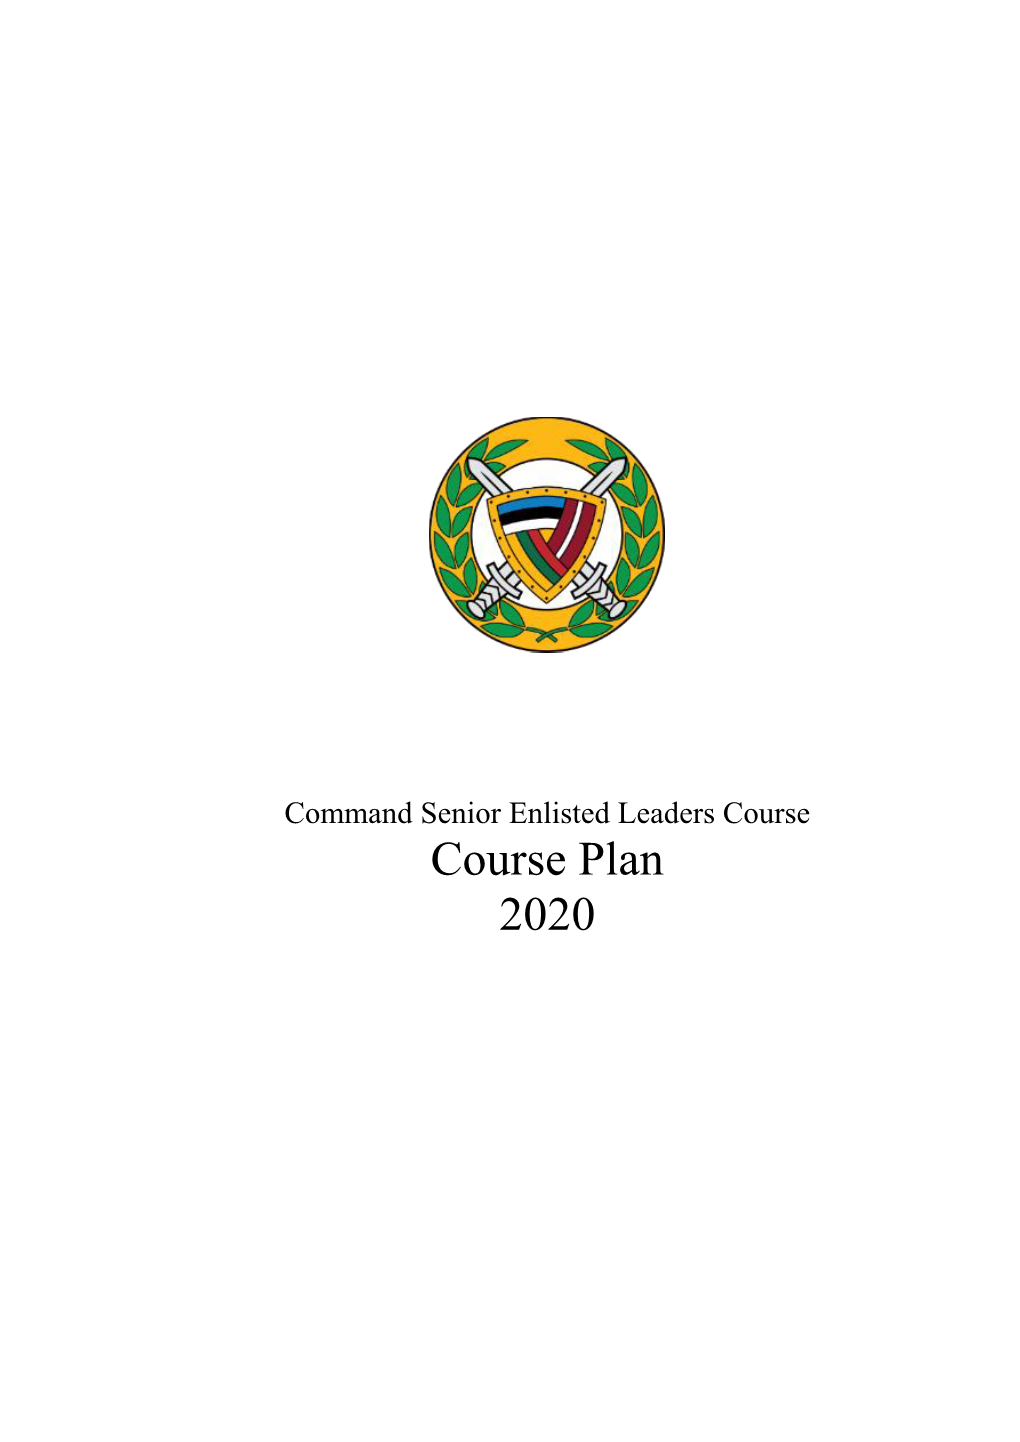 Course Plan 2020